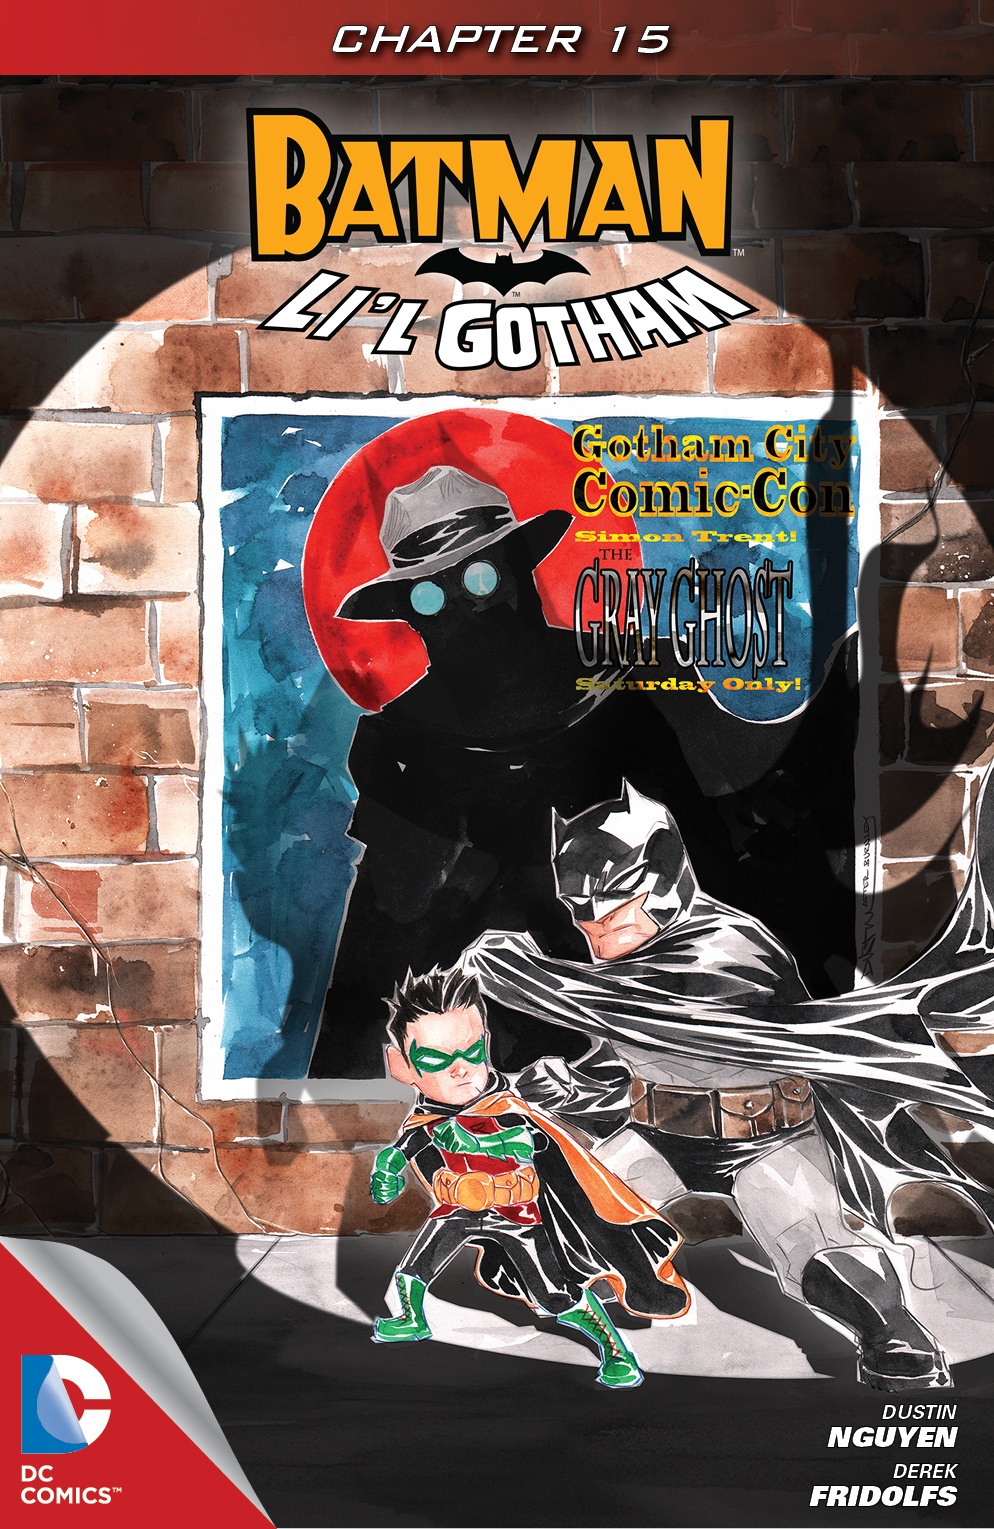 Batman: Li'l Gotham #15 preview images